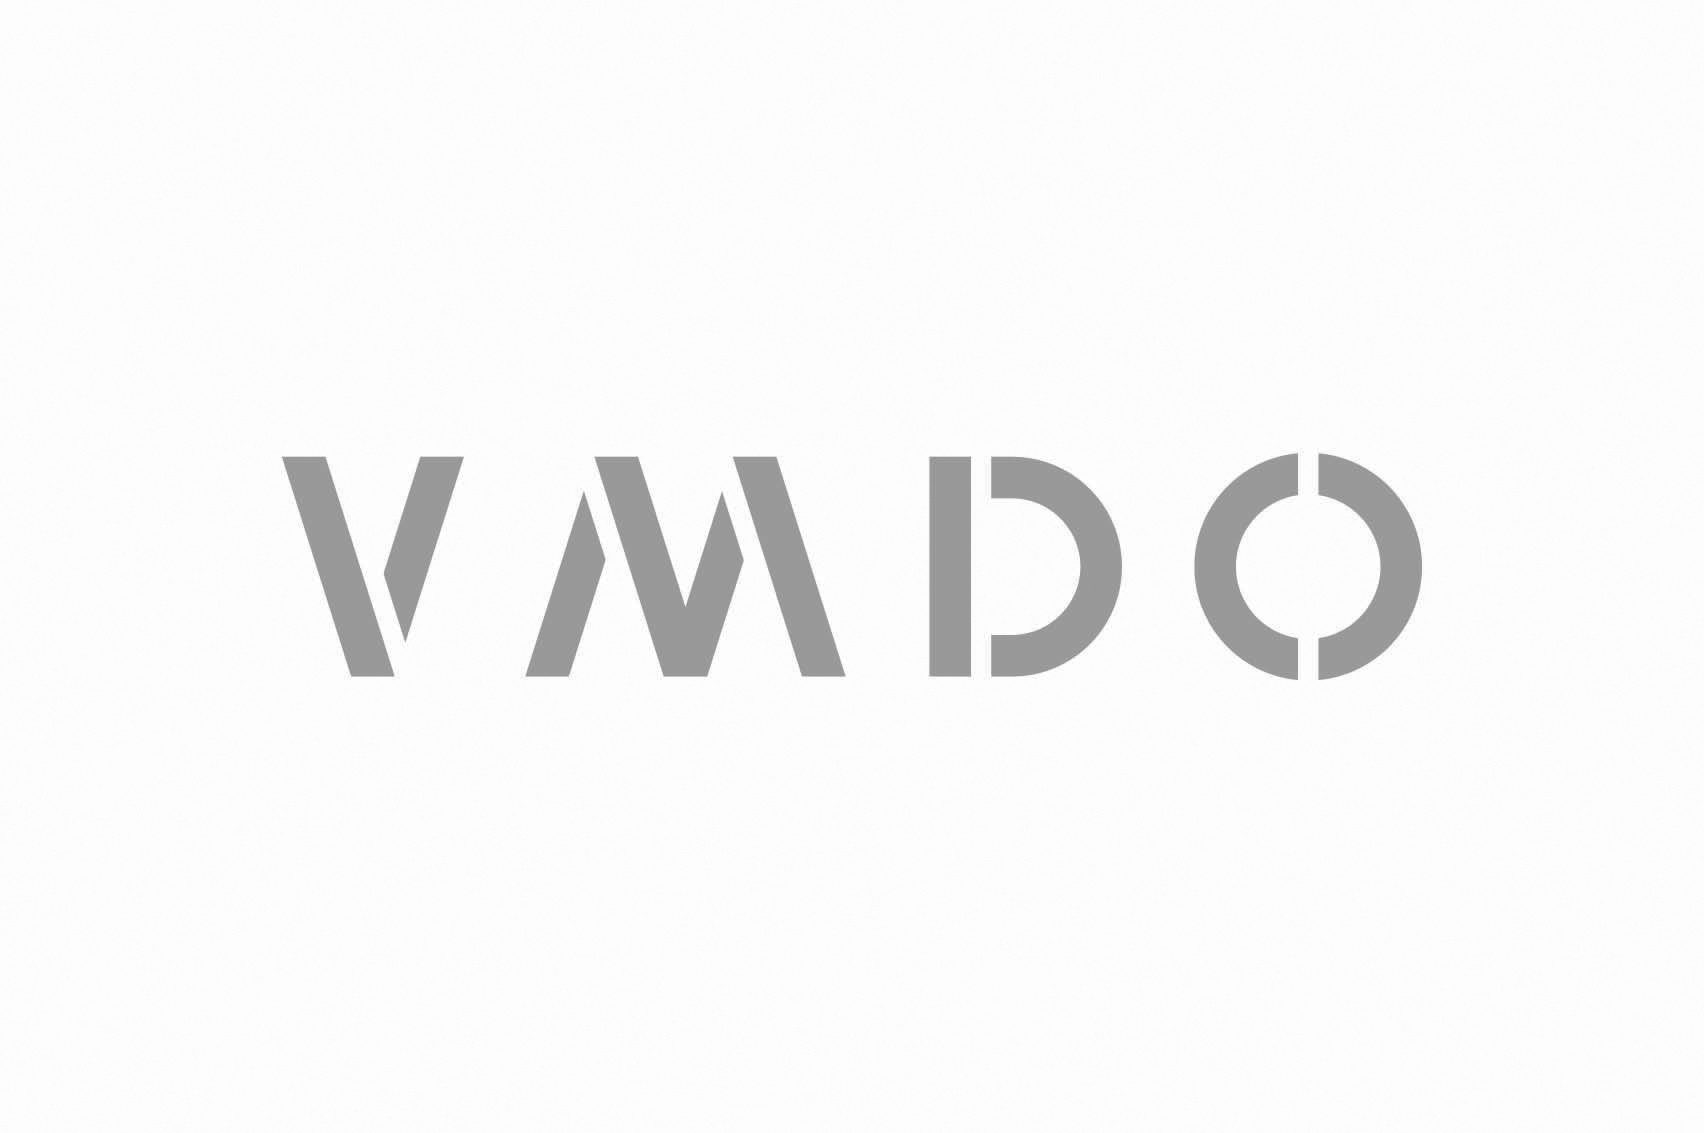 VMDO Architecture Firm Rebrand